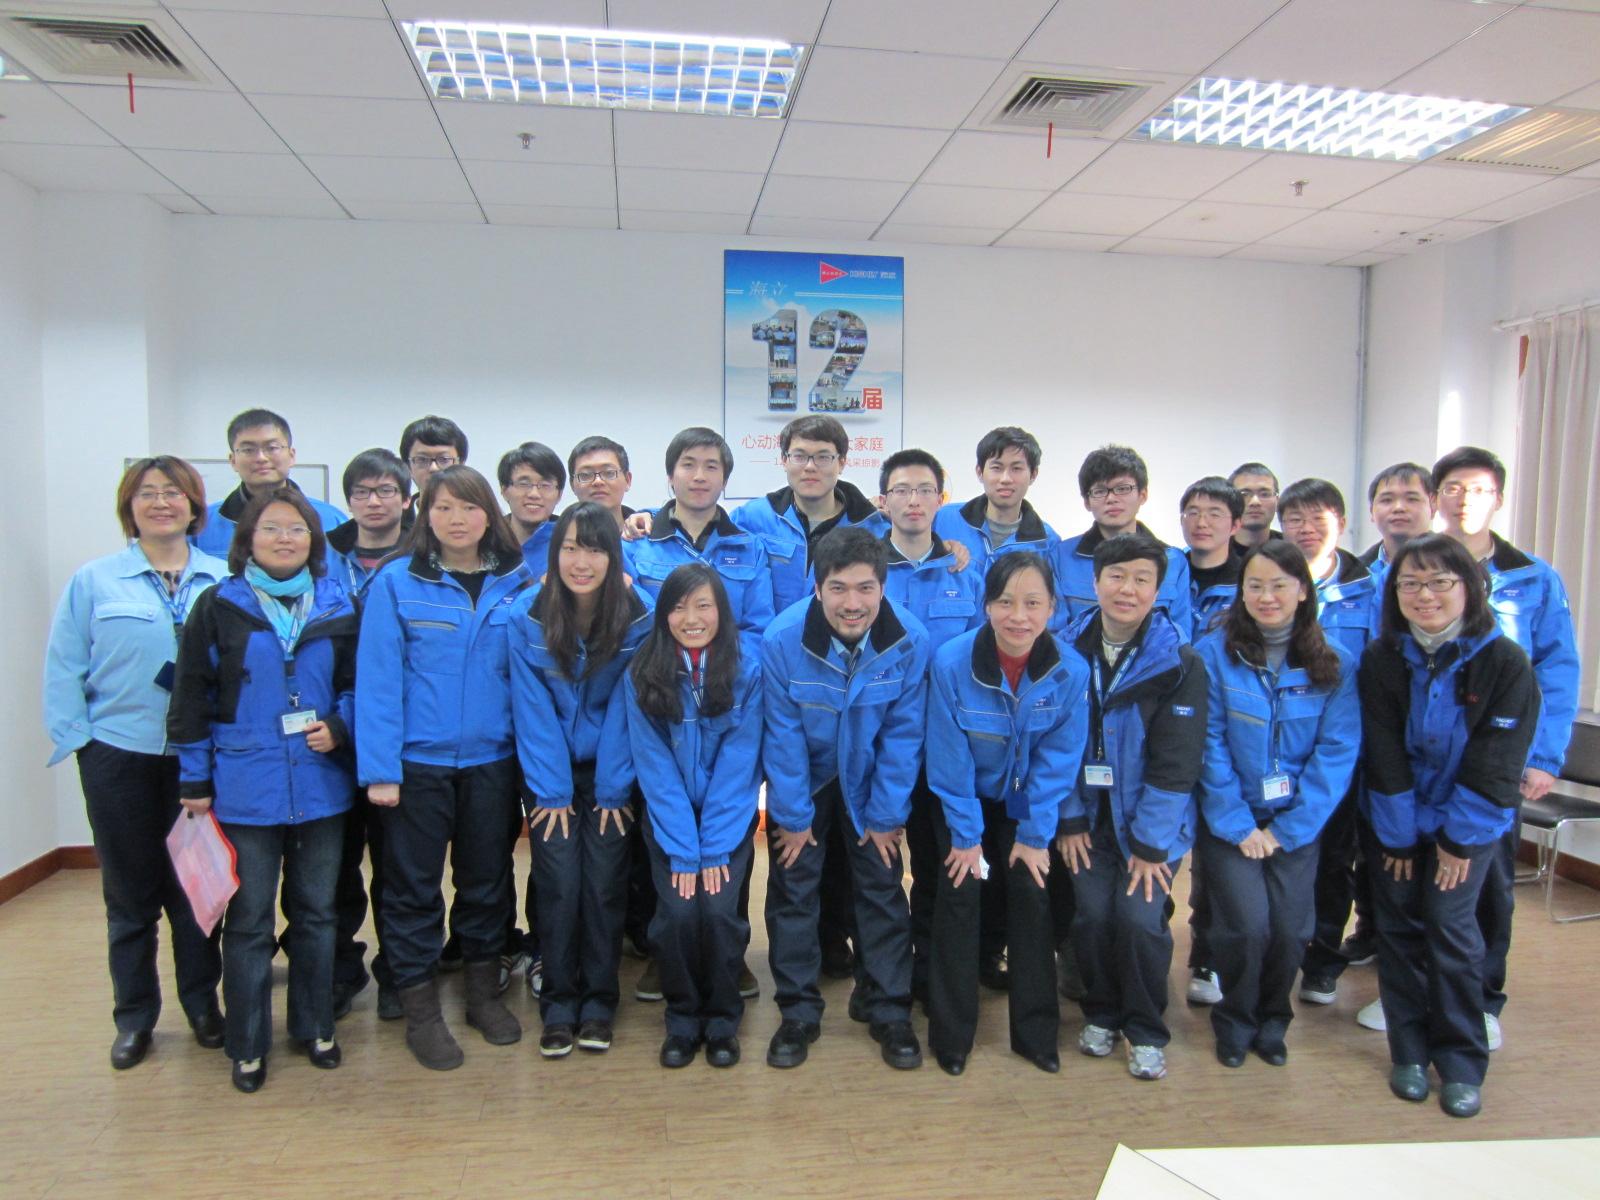 上海日立举行2012届新进大学生中期座谈会